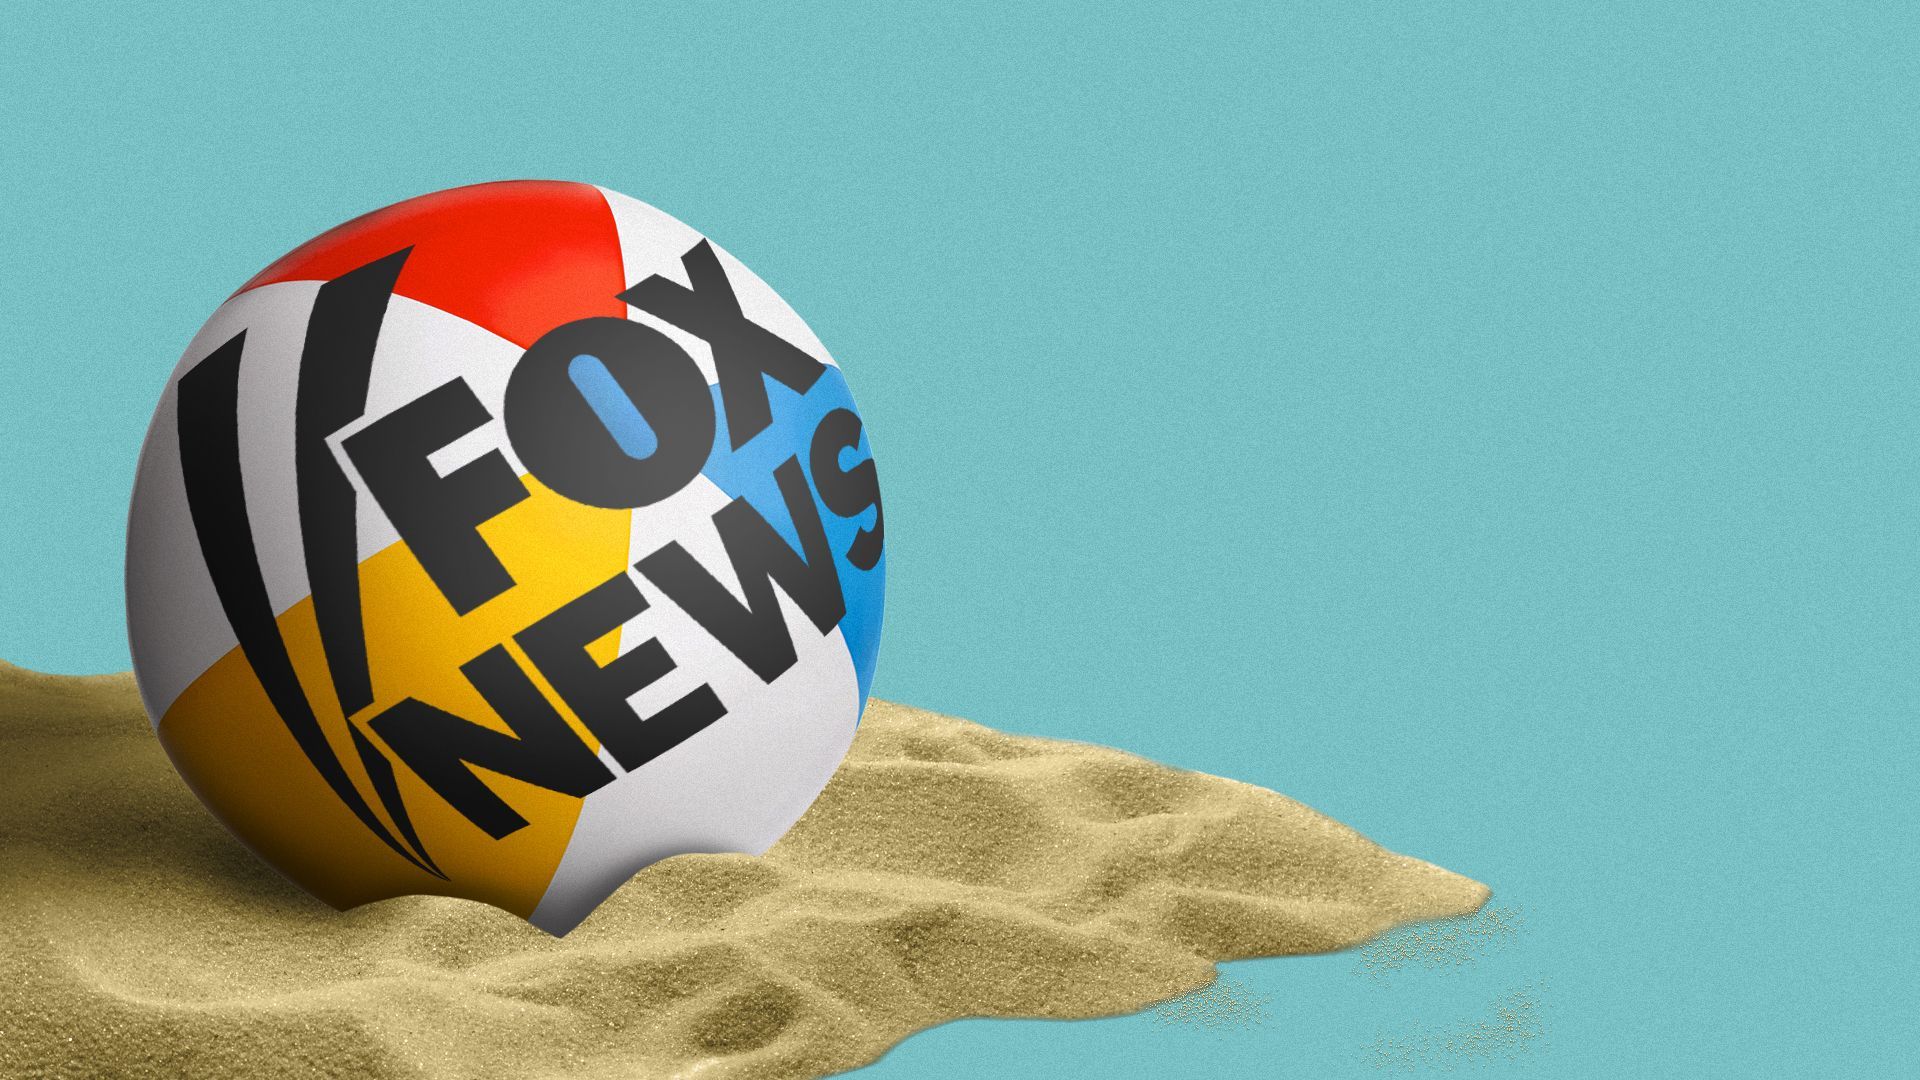 Illustration of the Fox News logo on a beach ball.